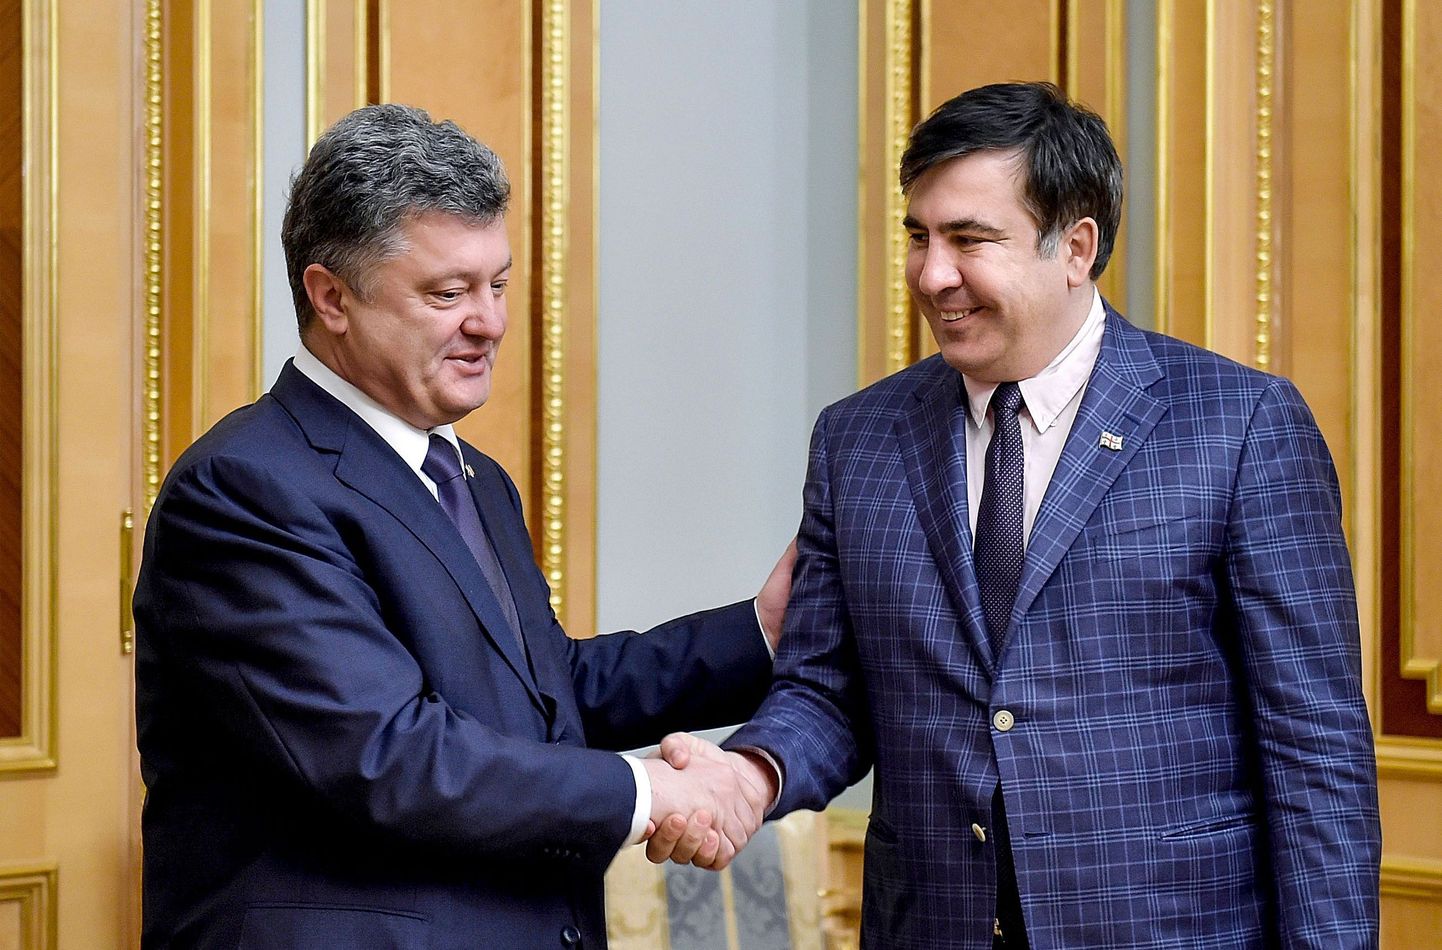 Президент Украины Петр Порошенко (на фото слева) называл бывшего президента Грузии Михаила Саакашвили (на фото справа) большим другом Украины.